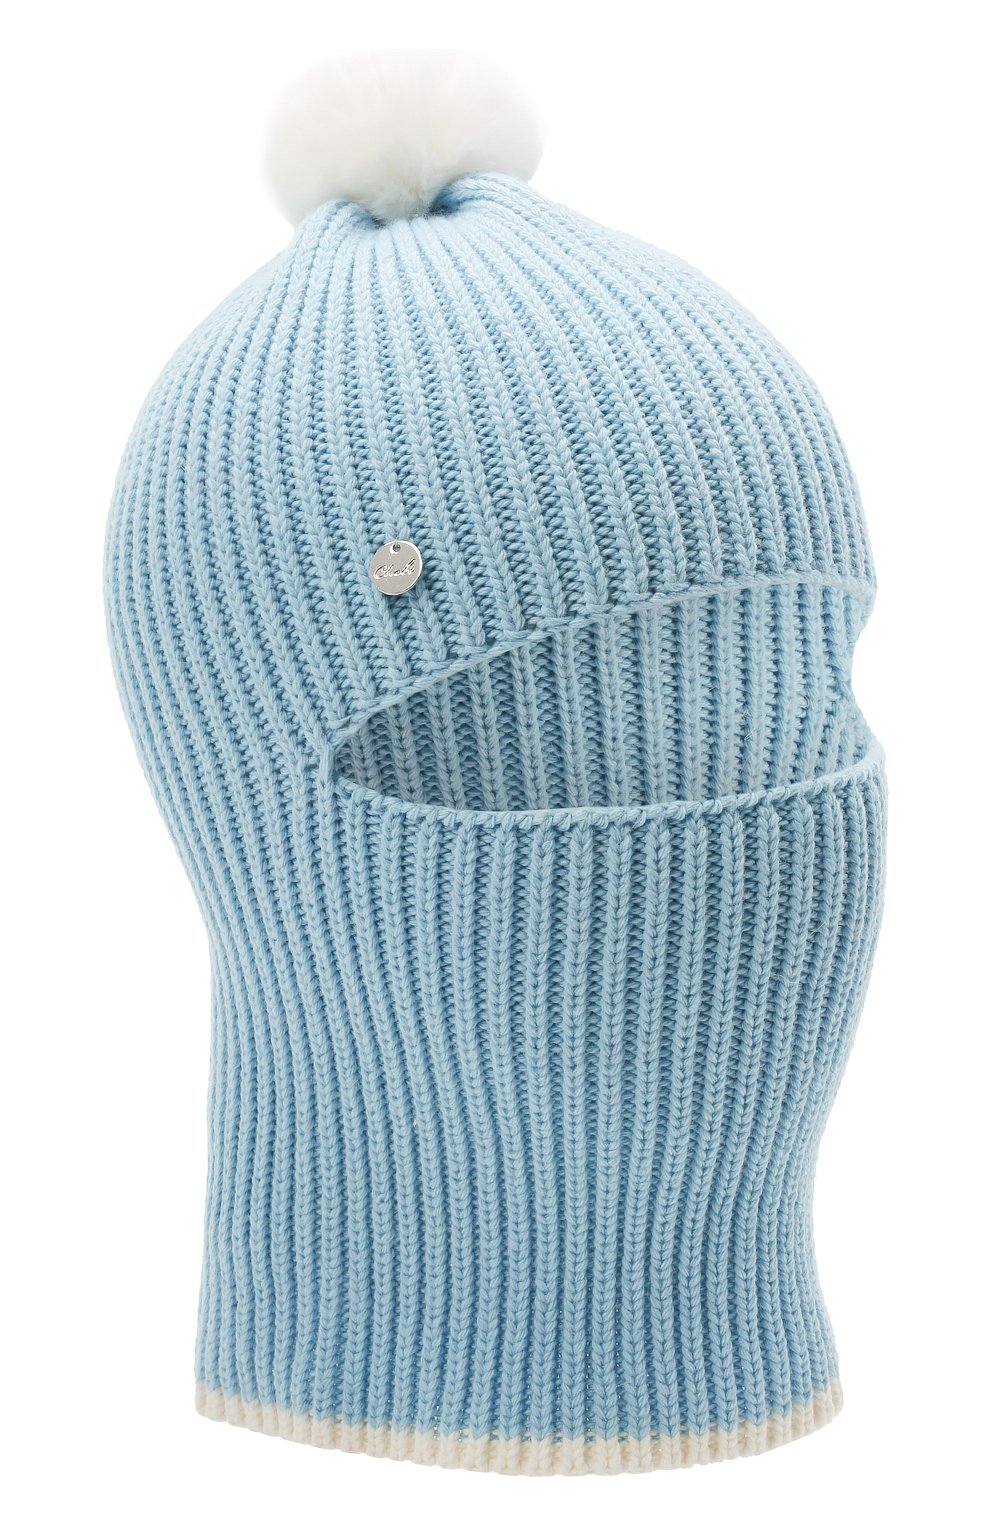 Детского хлопковая шапка-балаклава CHOBI голубого цвета, арт. WH-3012 | Фото 1 (Материал: Текстиль, Синтетический материал, Хлопок)